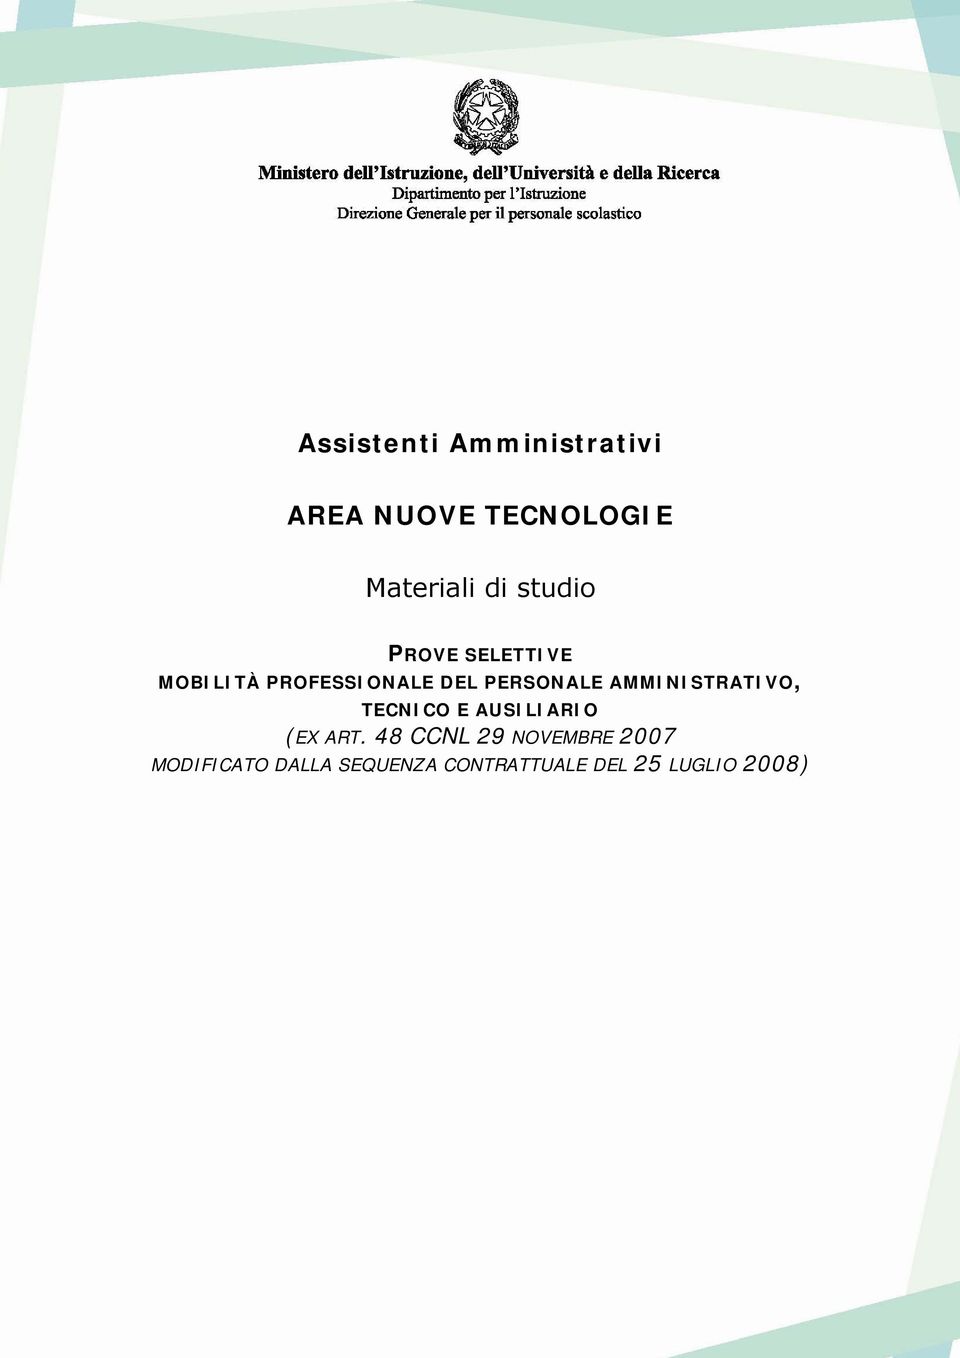 AMMINISTRATIVO, TECNICO E AUSILIARIO (EX ART.